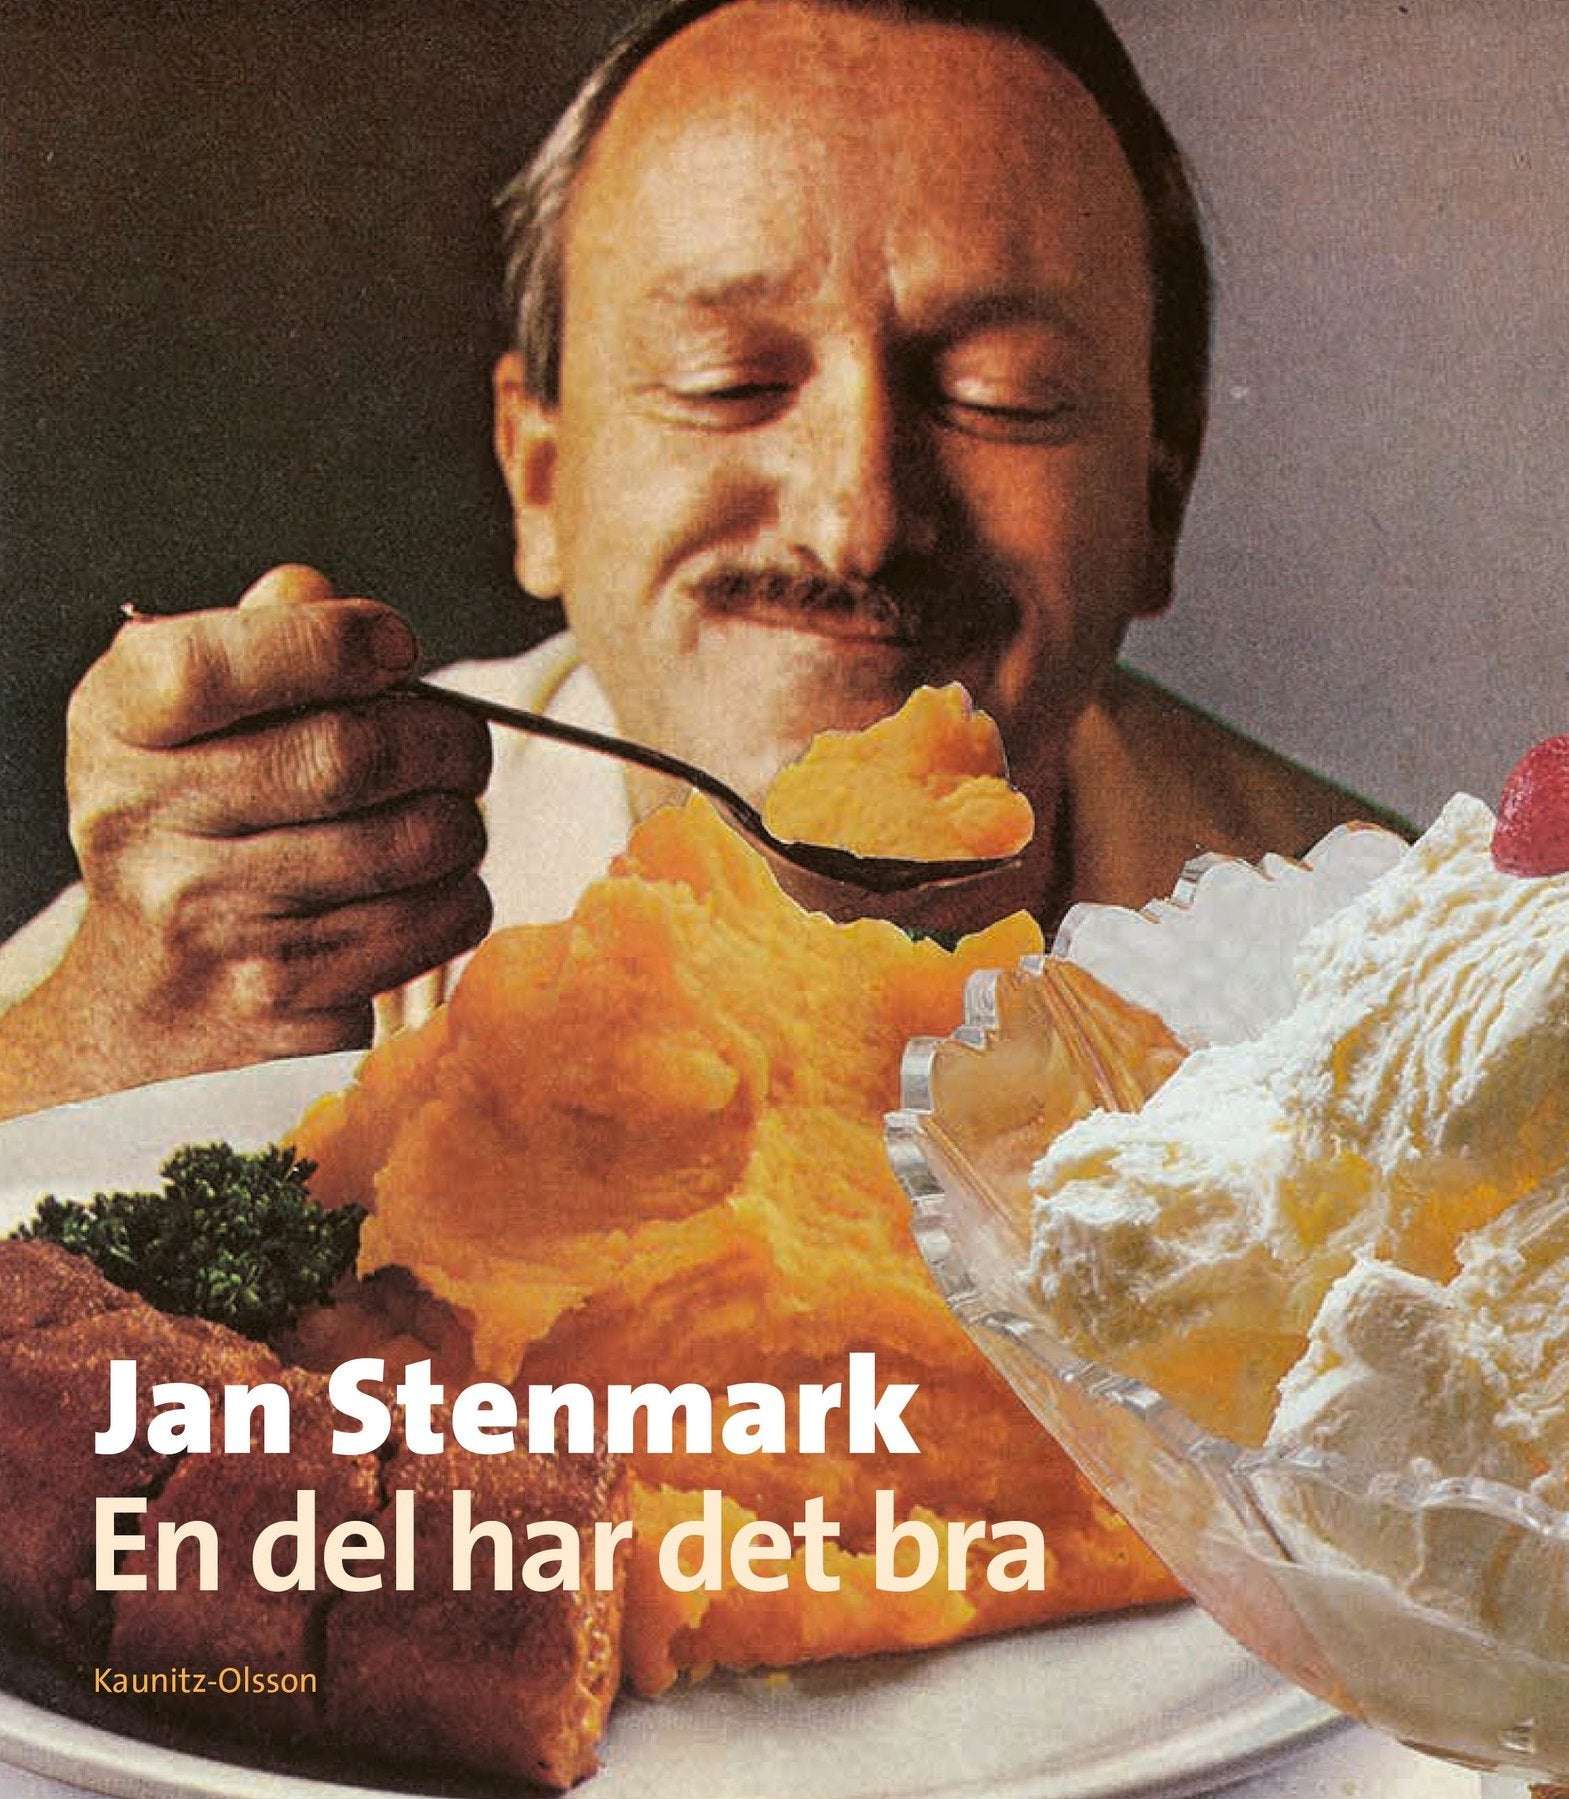 Jan Stenmarks Bok - En del har det bra